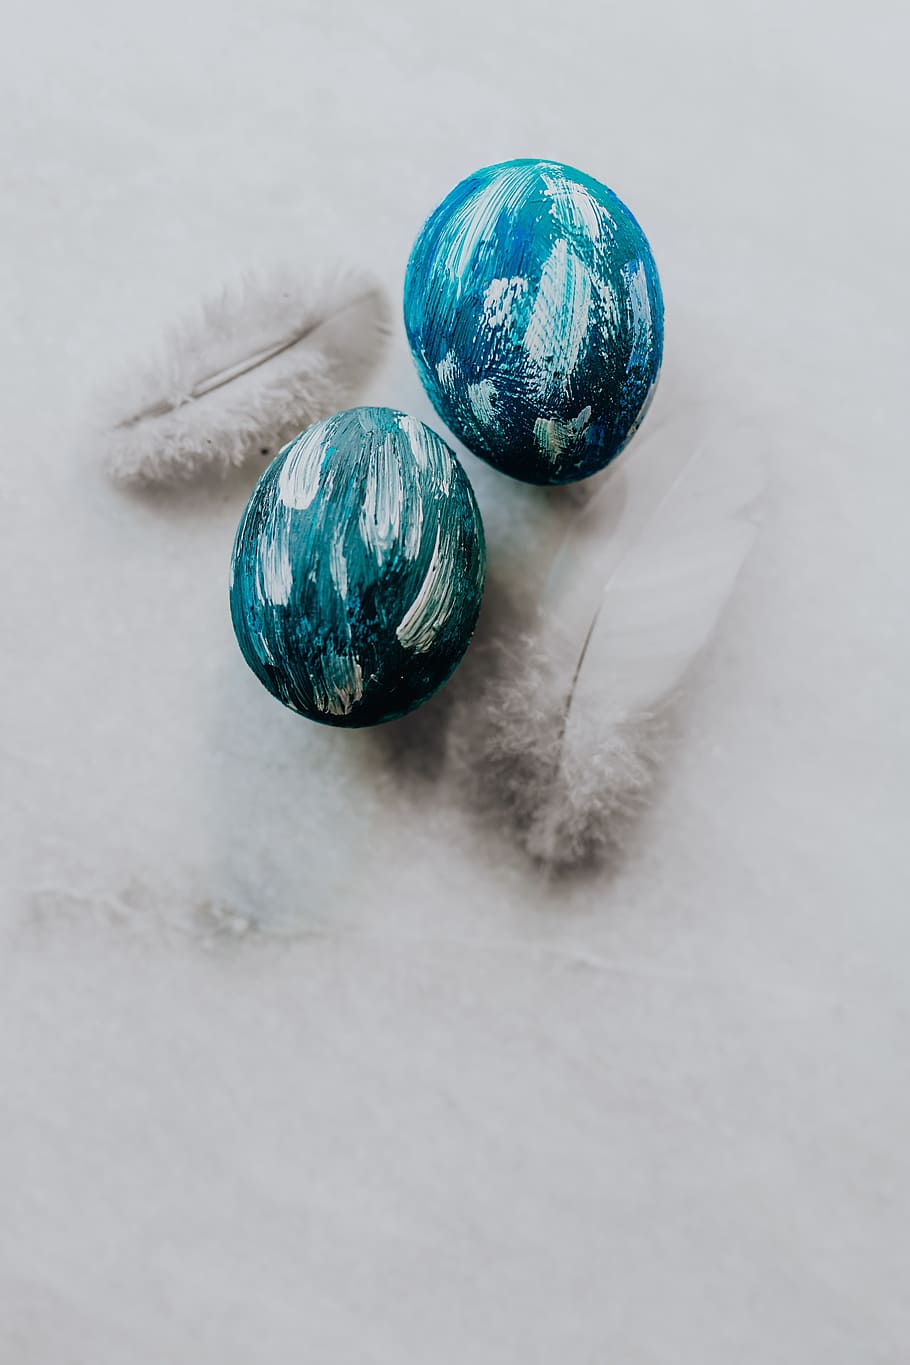 ovos de páscoa azuis, azul, ovos, coloridos, páscoa, pintado, esfera, ninguém, natureza morta, dentro de casa